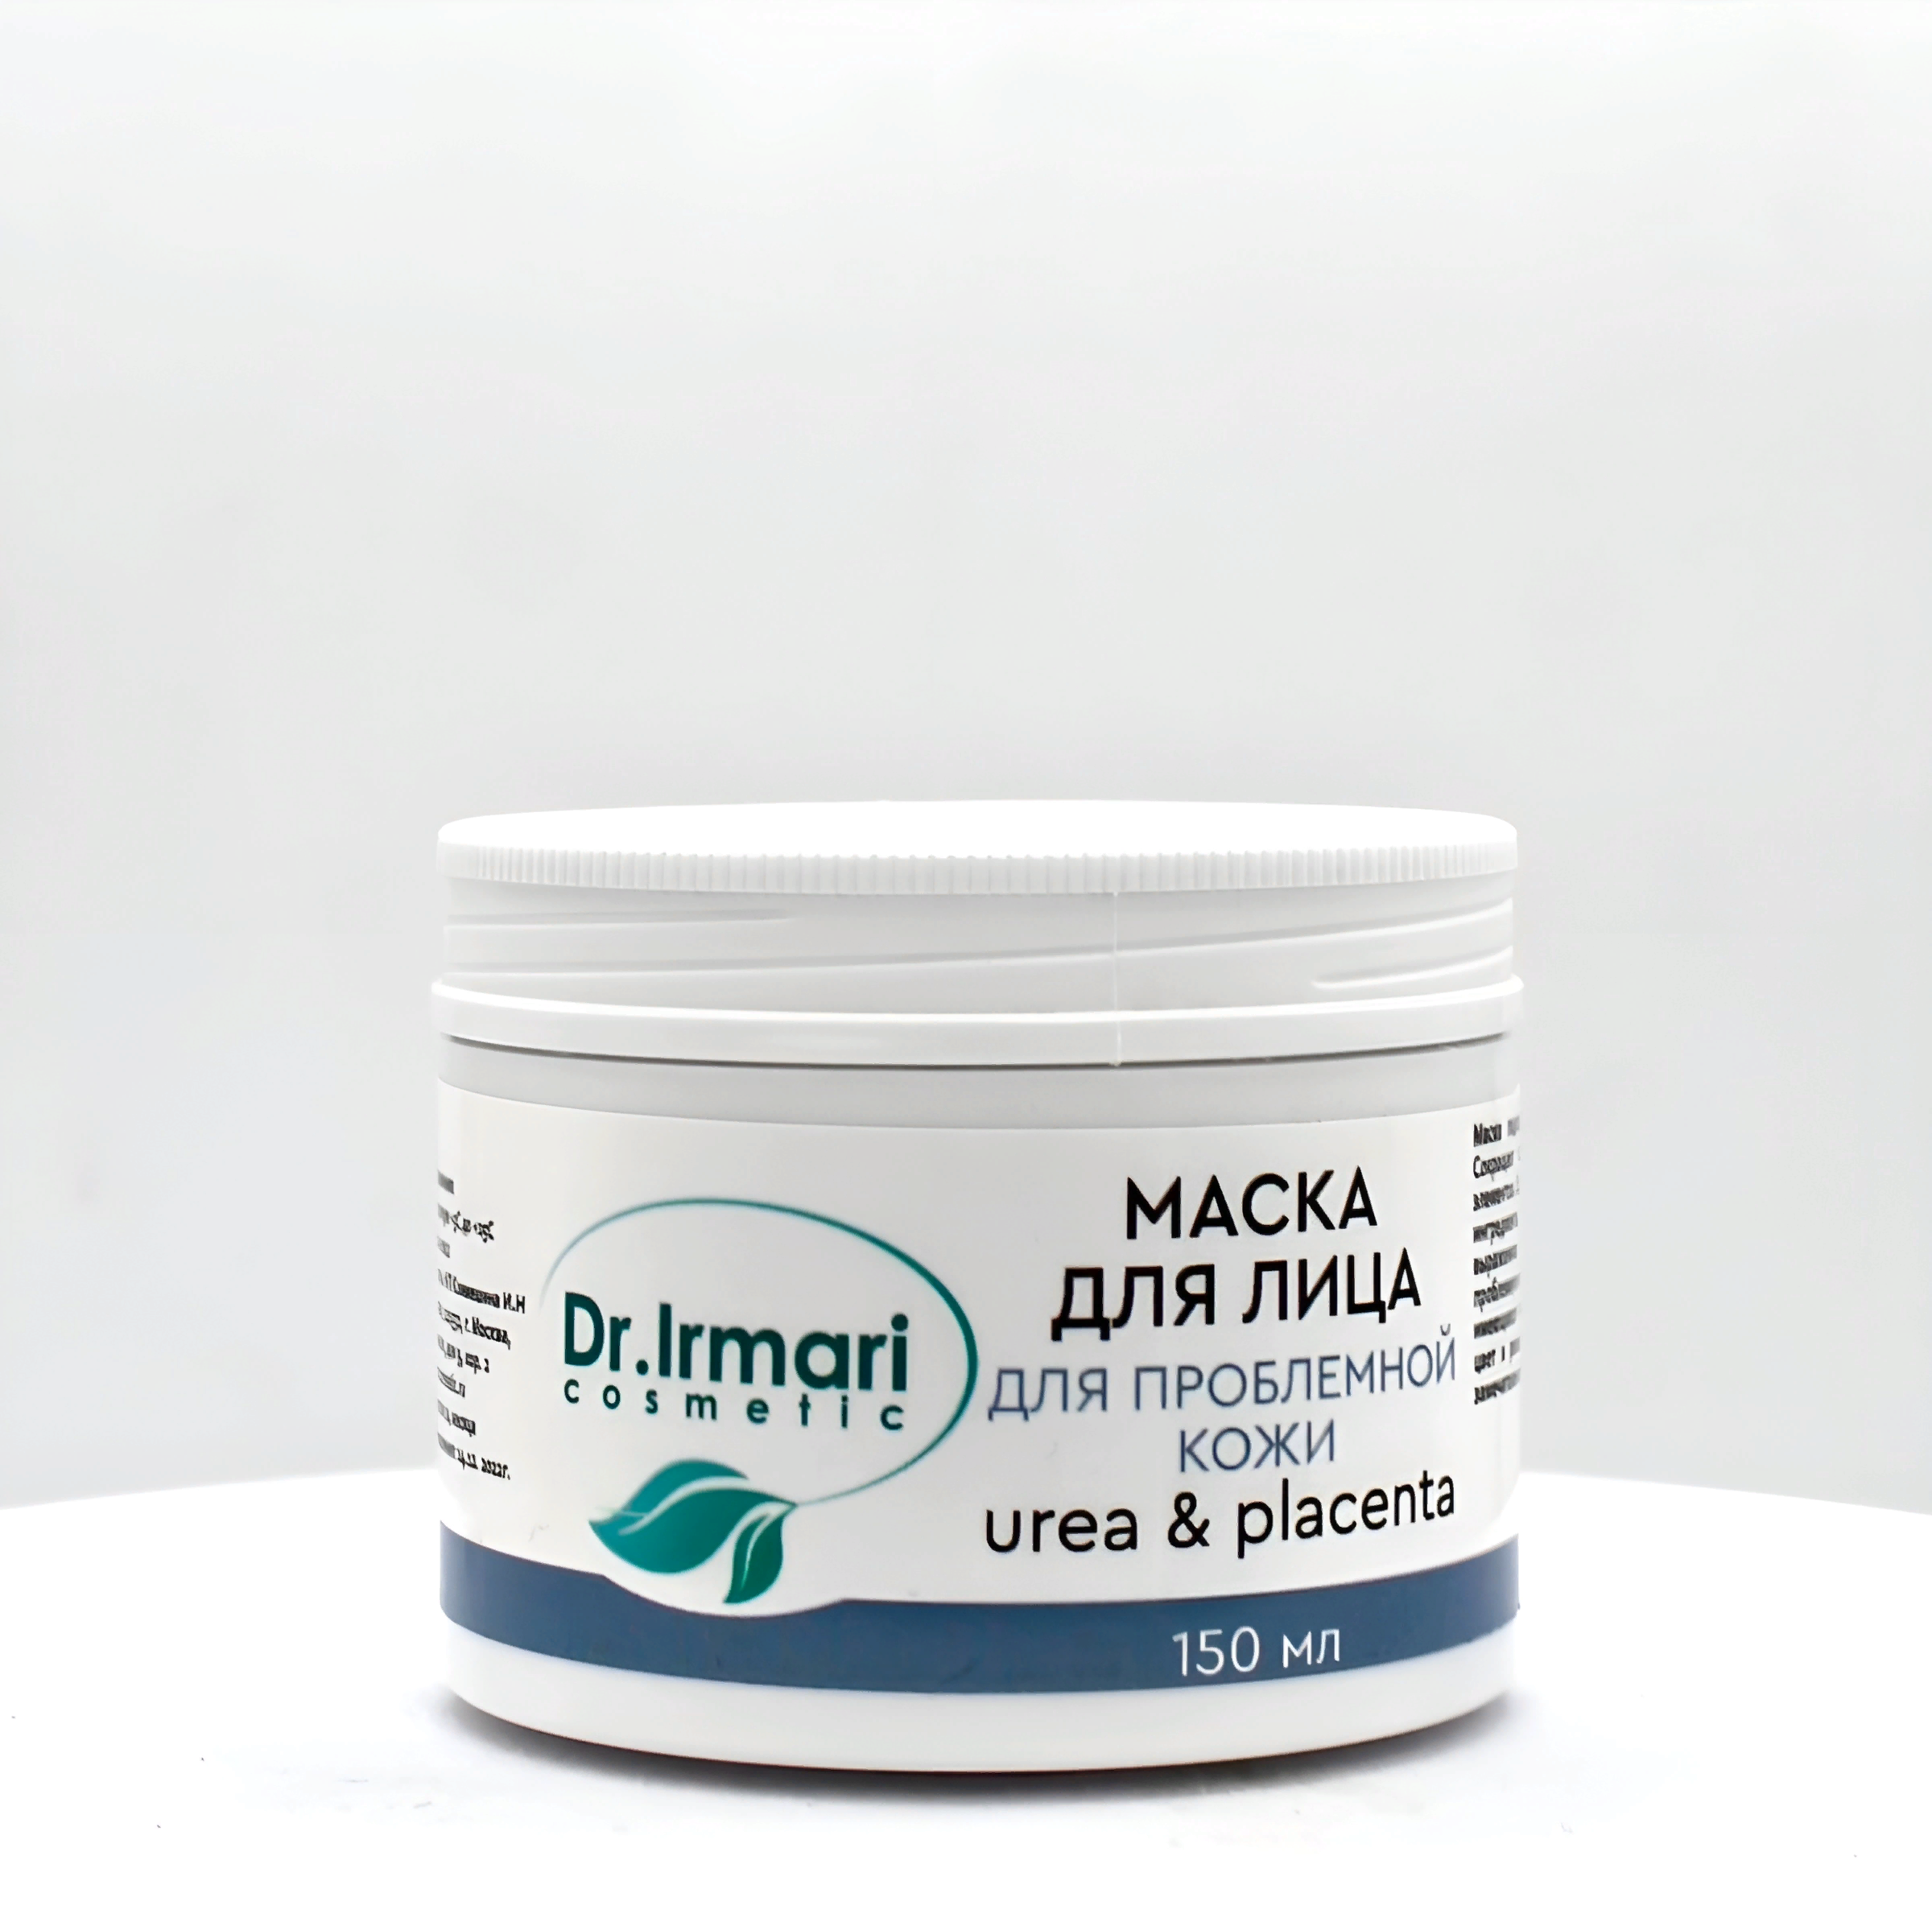 Маска для лица Dr.Irmari cosmetic Urea & Placenta для проблемной кожи 150 мл